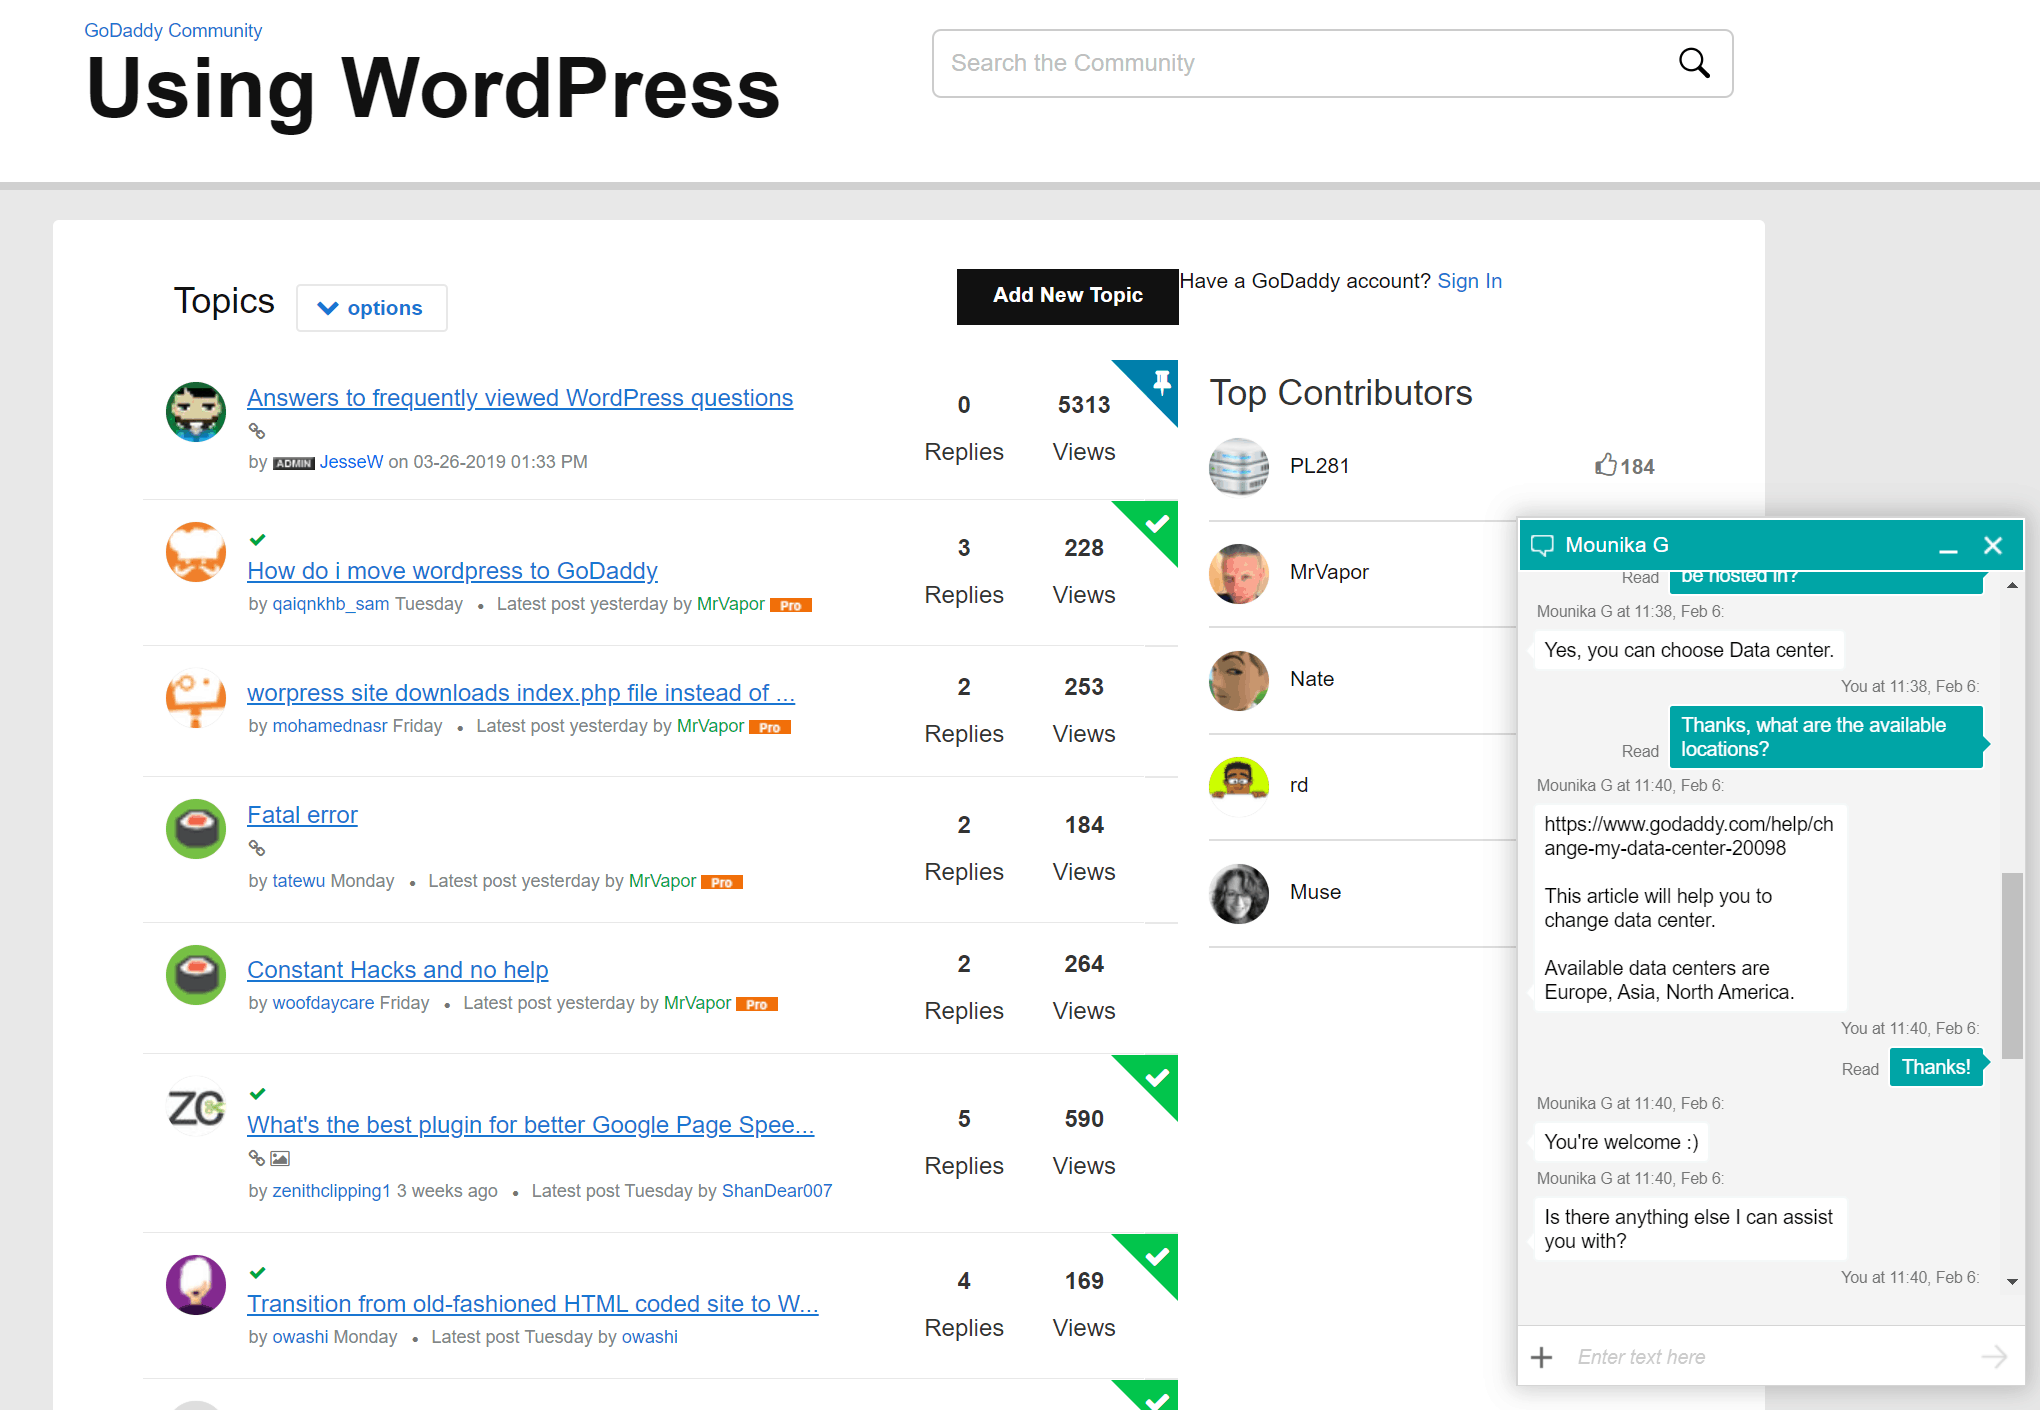 ฟอรัม WordPress ของ GoDaddy และการแชทสนับสนุนของฉัน